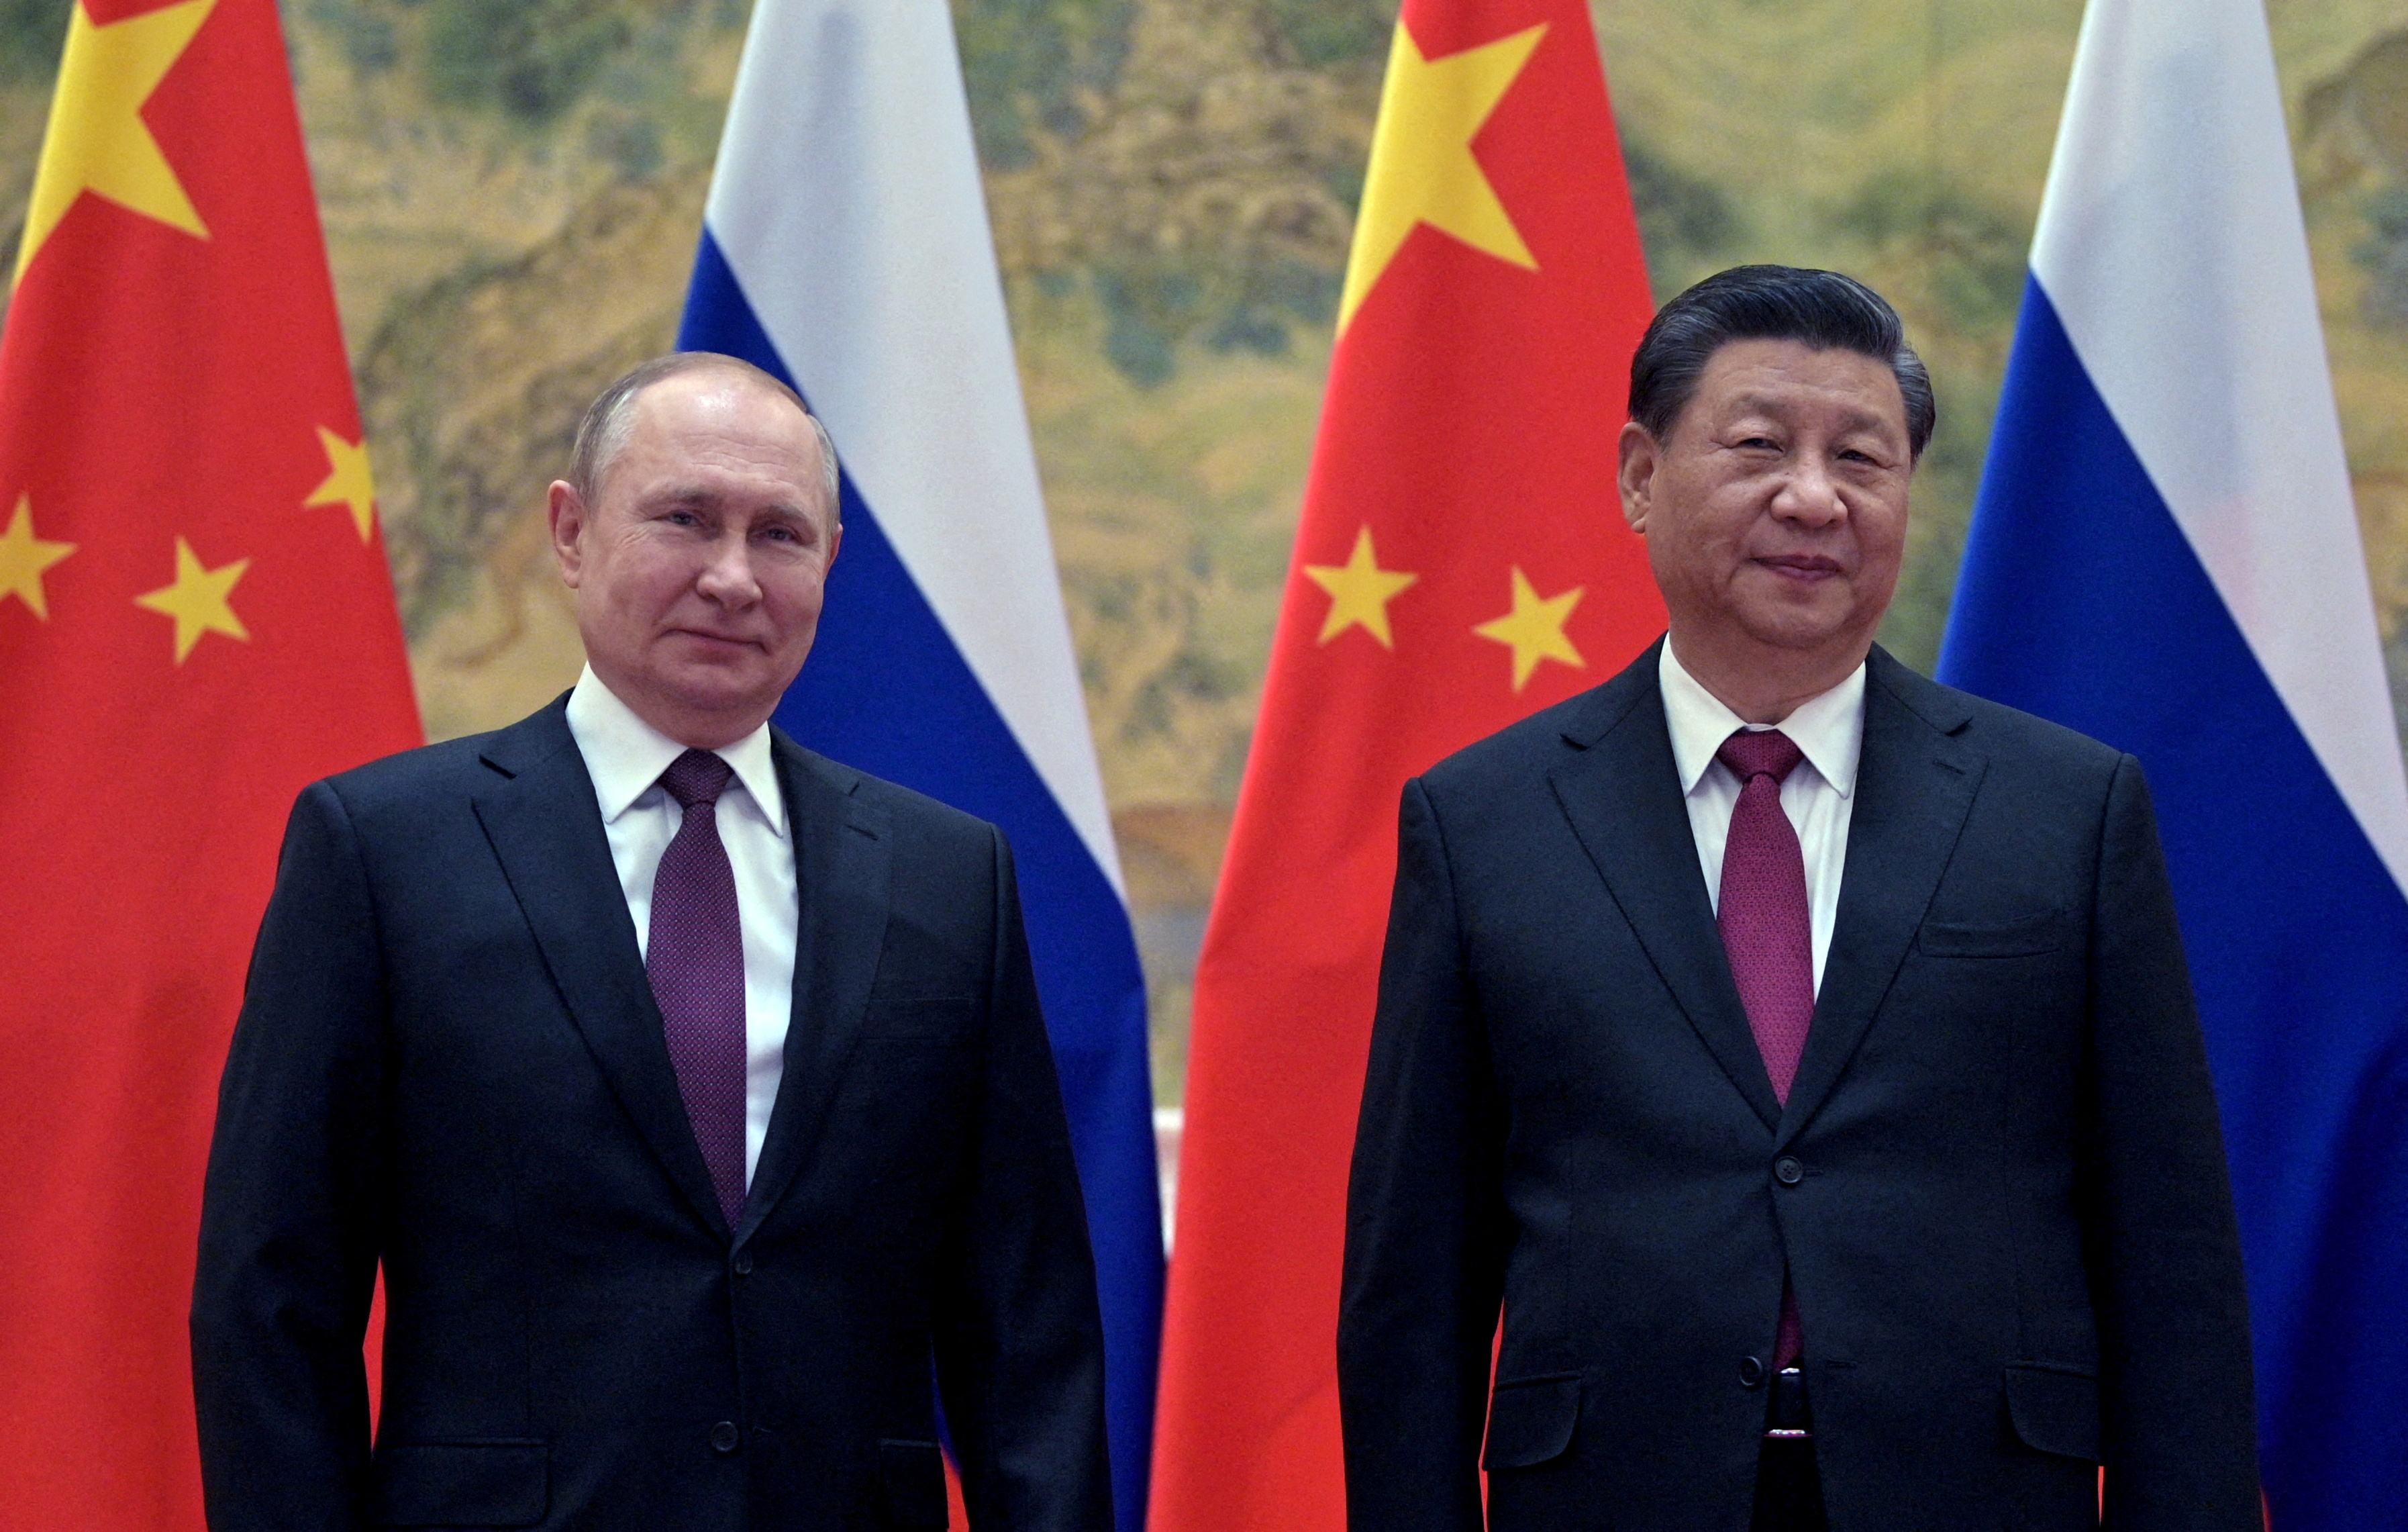 FOTO DE ARCHIVO: El presidente ruso, Vladímir Putin, asiste a una reunión con el presidente chino, Xi Jinping, en Beijing (China) el 4 de febrero de 2022. Sputnik/Aleksey Druzhinin/Kremlin vía REUTERS